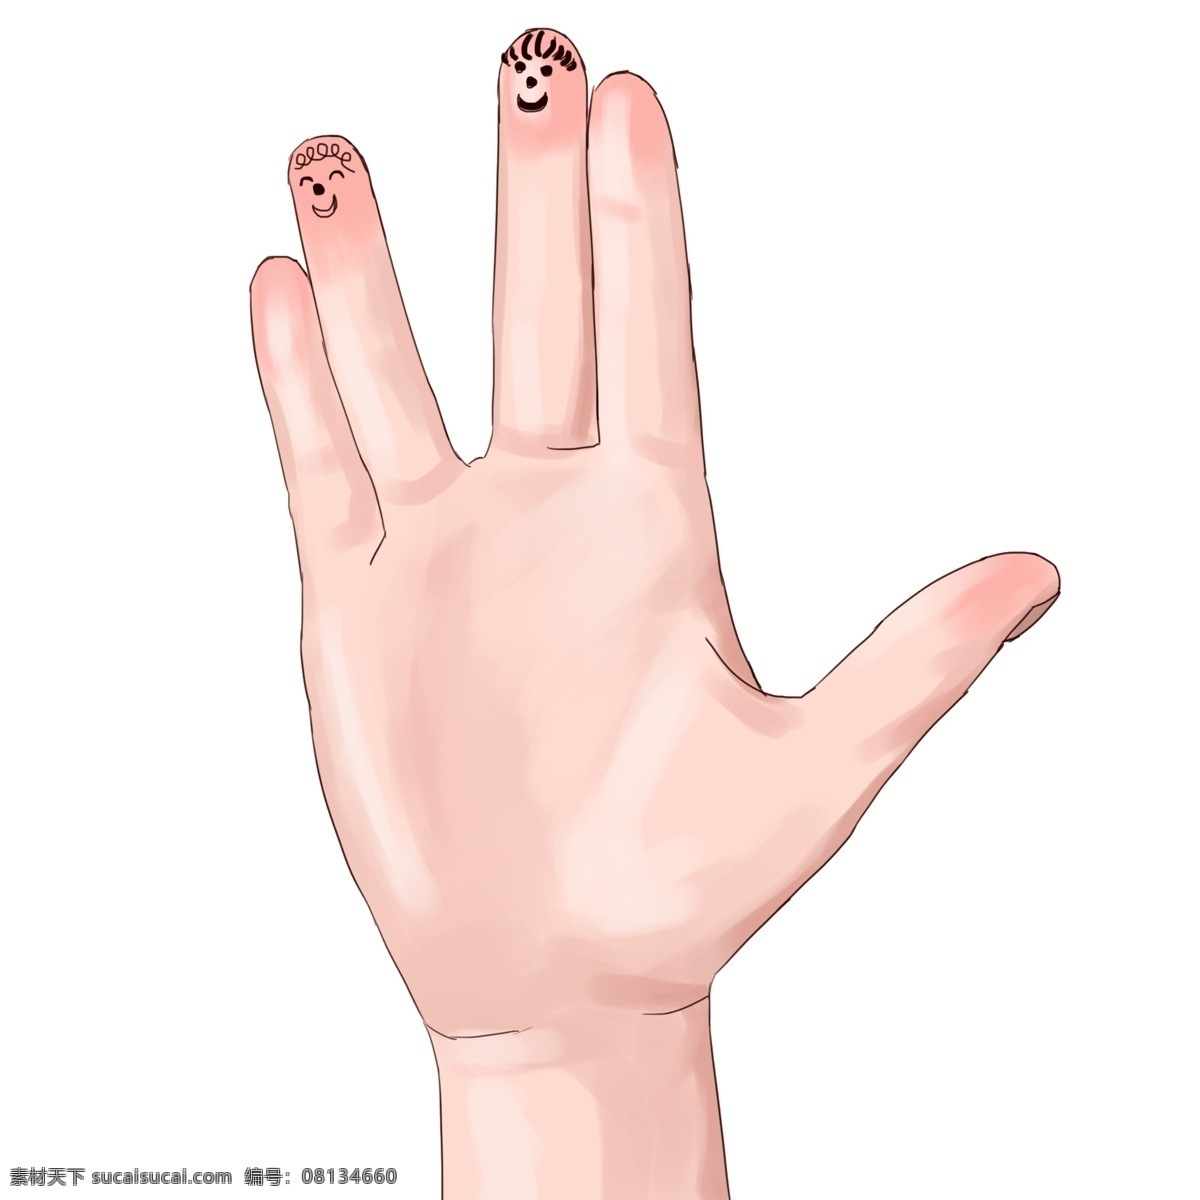 卡通 笑脸 手指 插图 装饰 漂亮的大手 细长的手指 笑脸手指画 个性 分开的手指 手掌 卡通插画